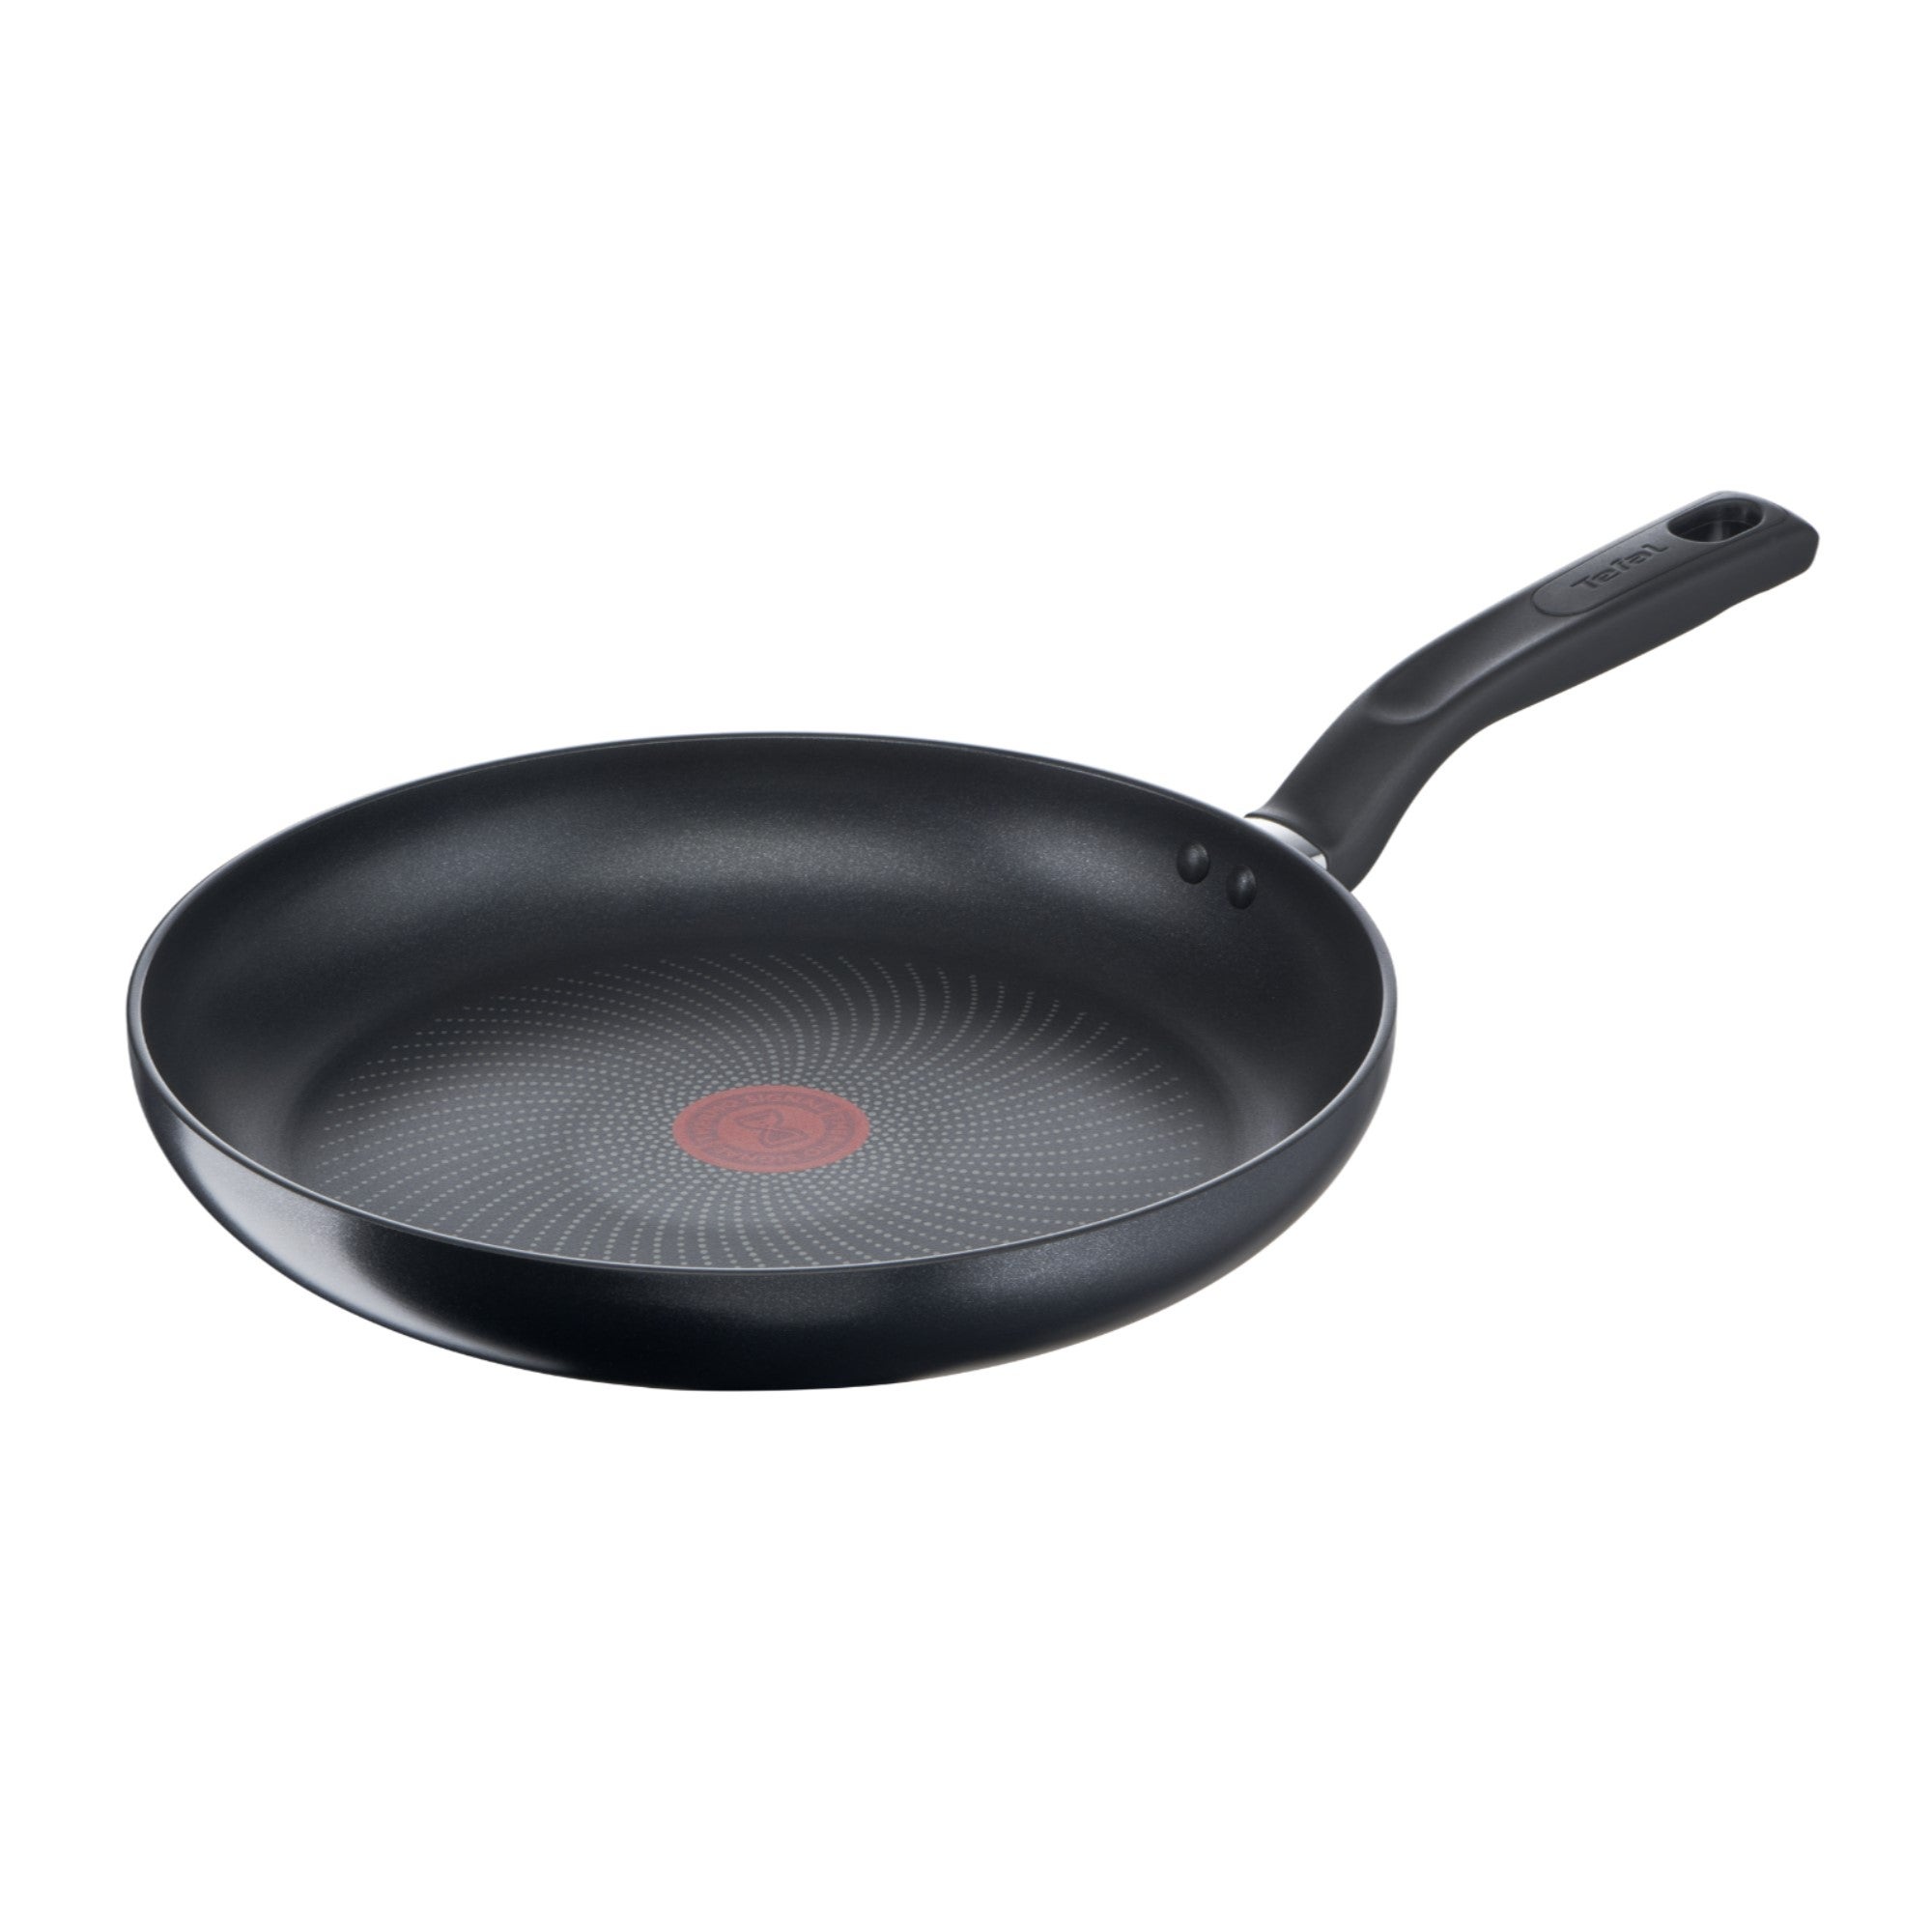 Tefal Total Non-Stick Frying Pan, 28cm